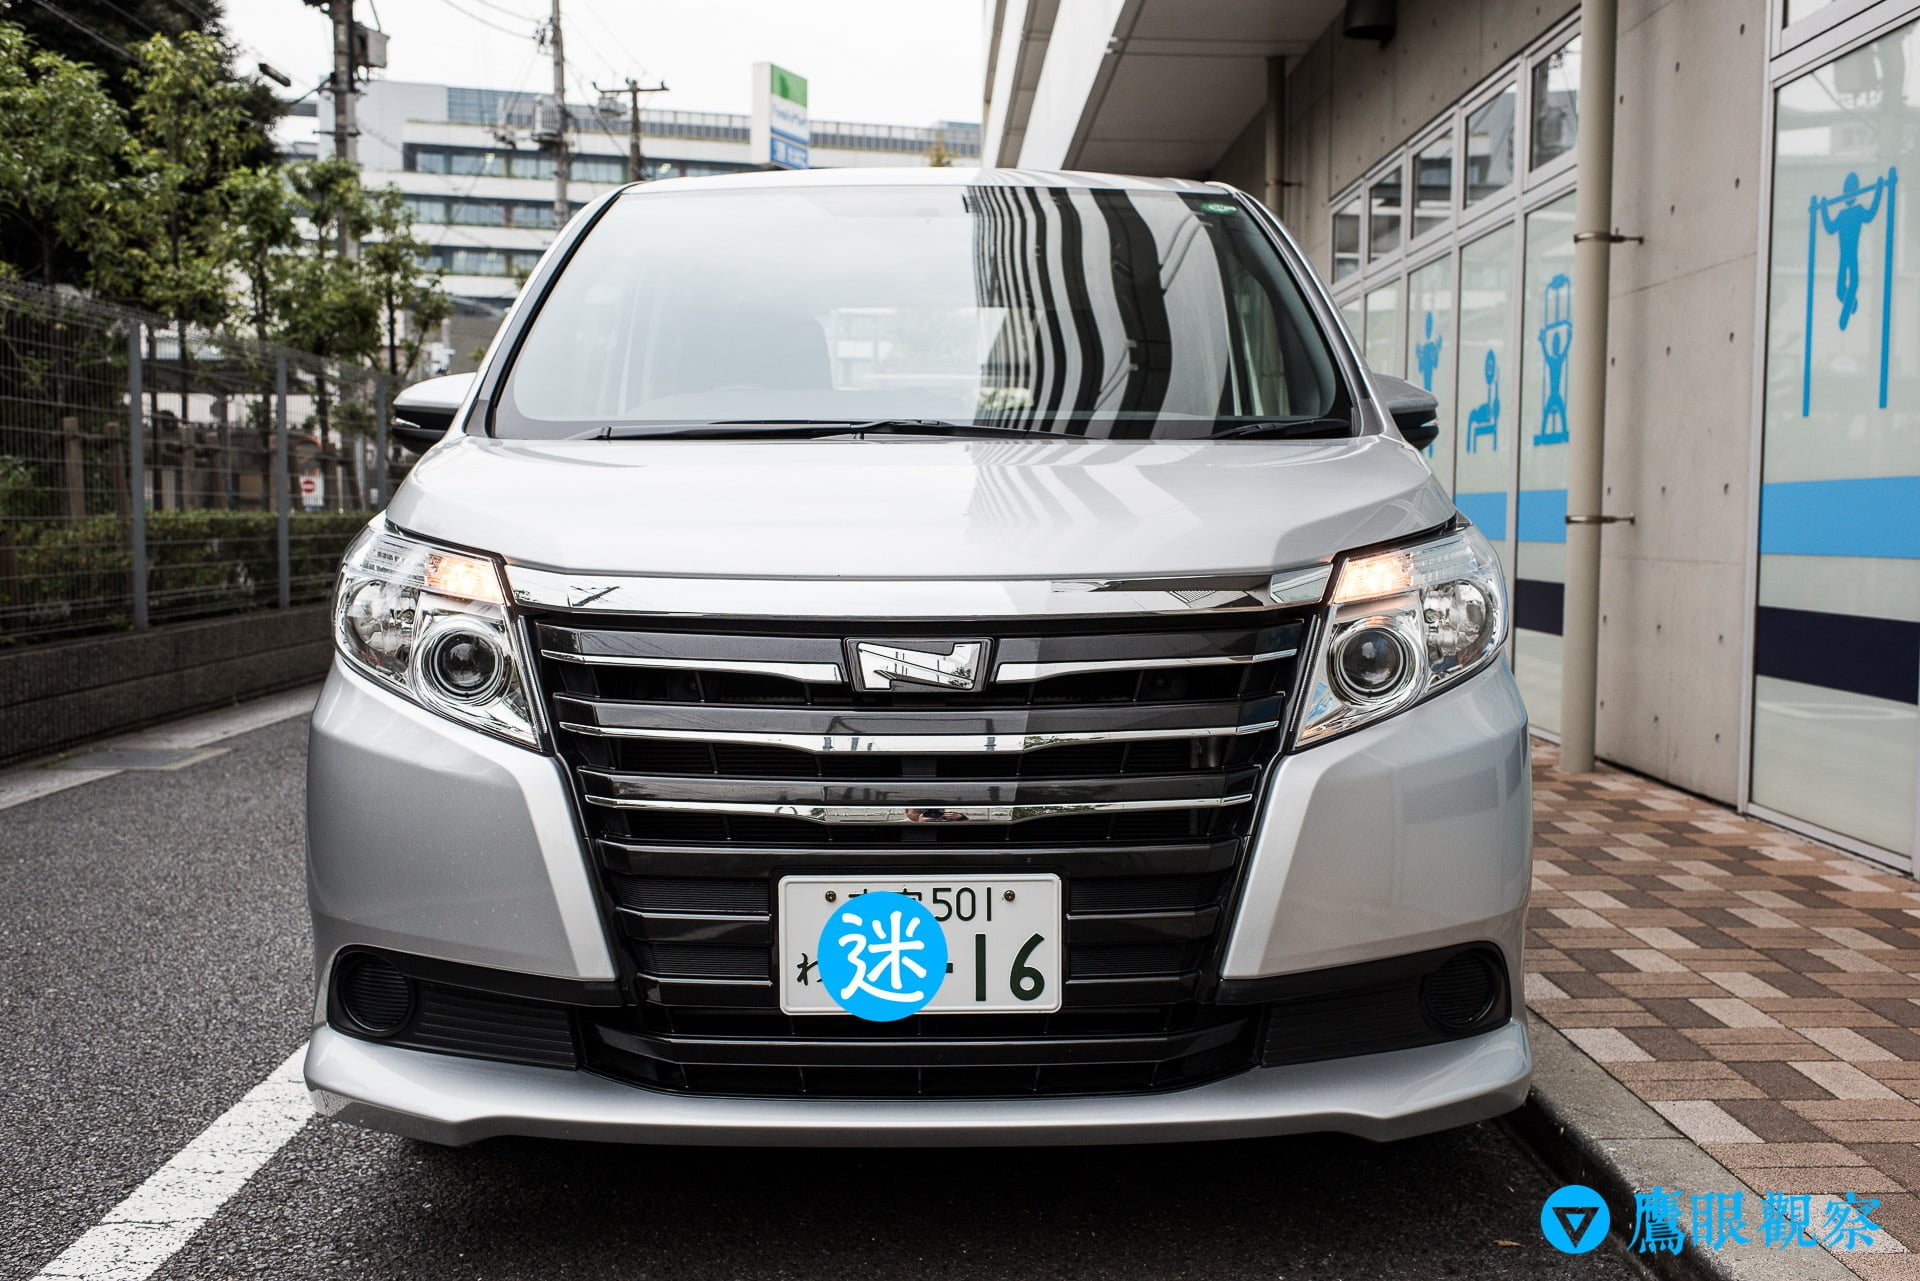 日本租車：從東京機場自駕暢遊北關東 3 縣的旅遊行程預定、租取還車教學 Rental Cars in Airport Tokyo Japan with Orix 9